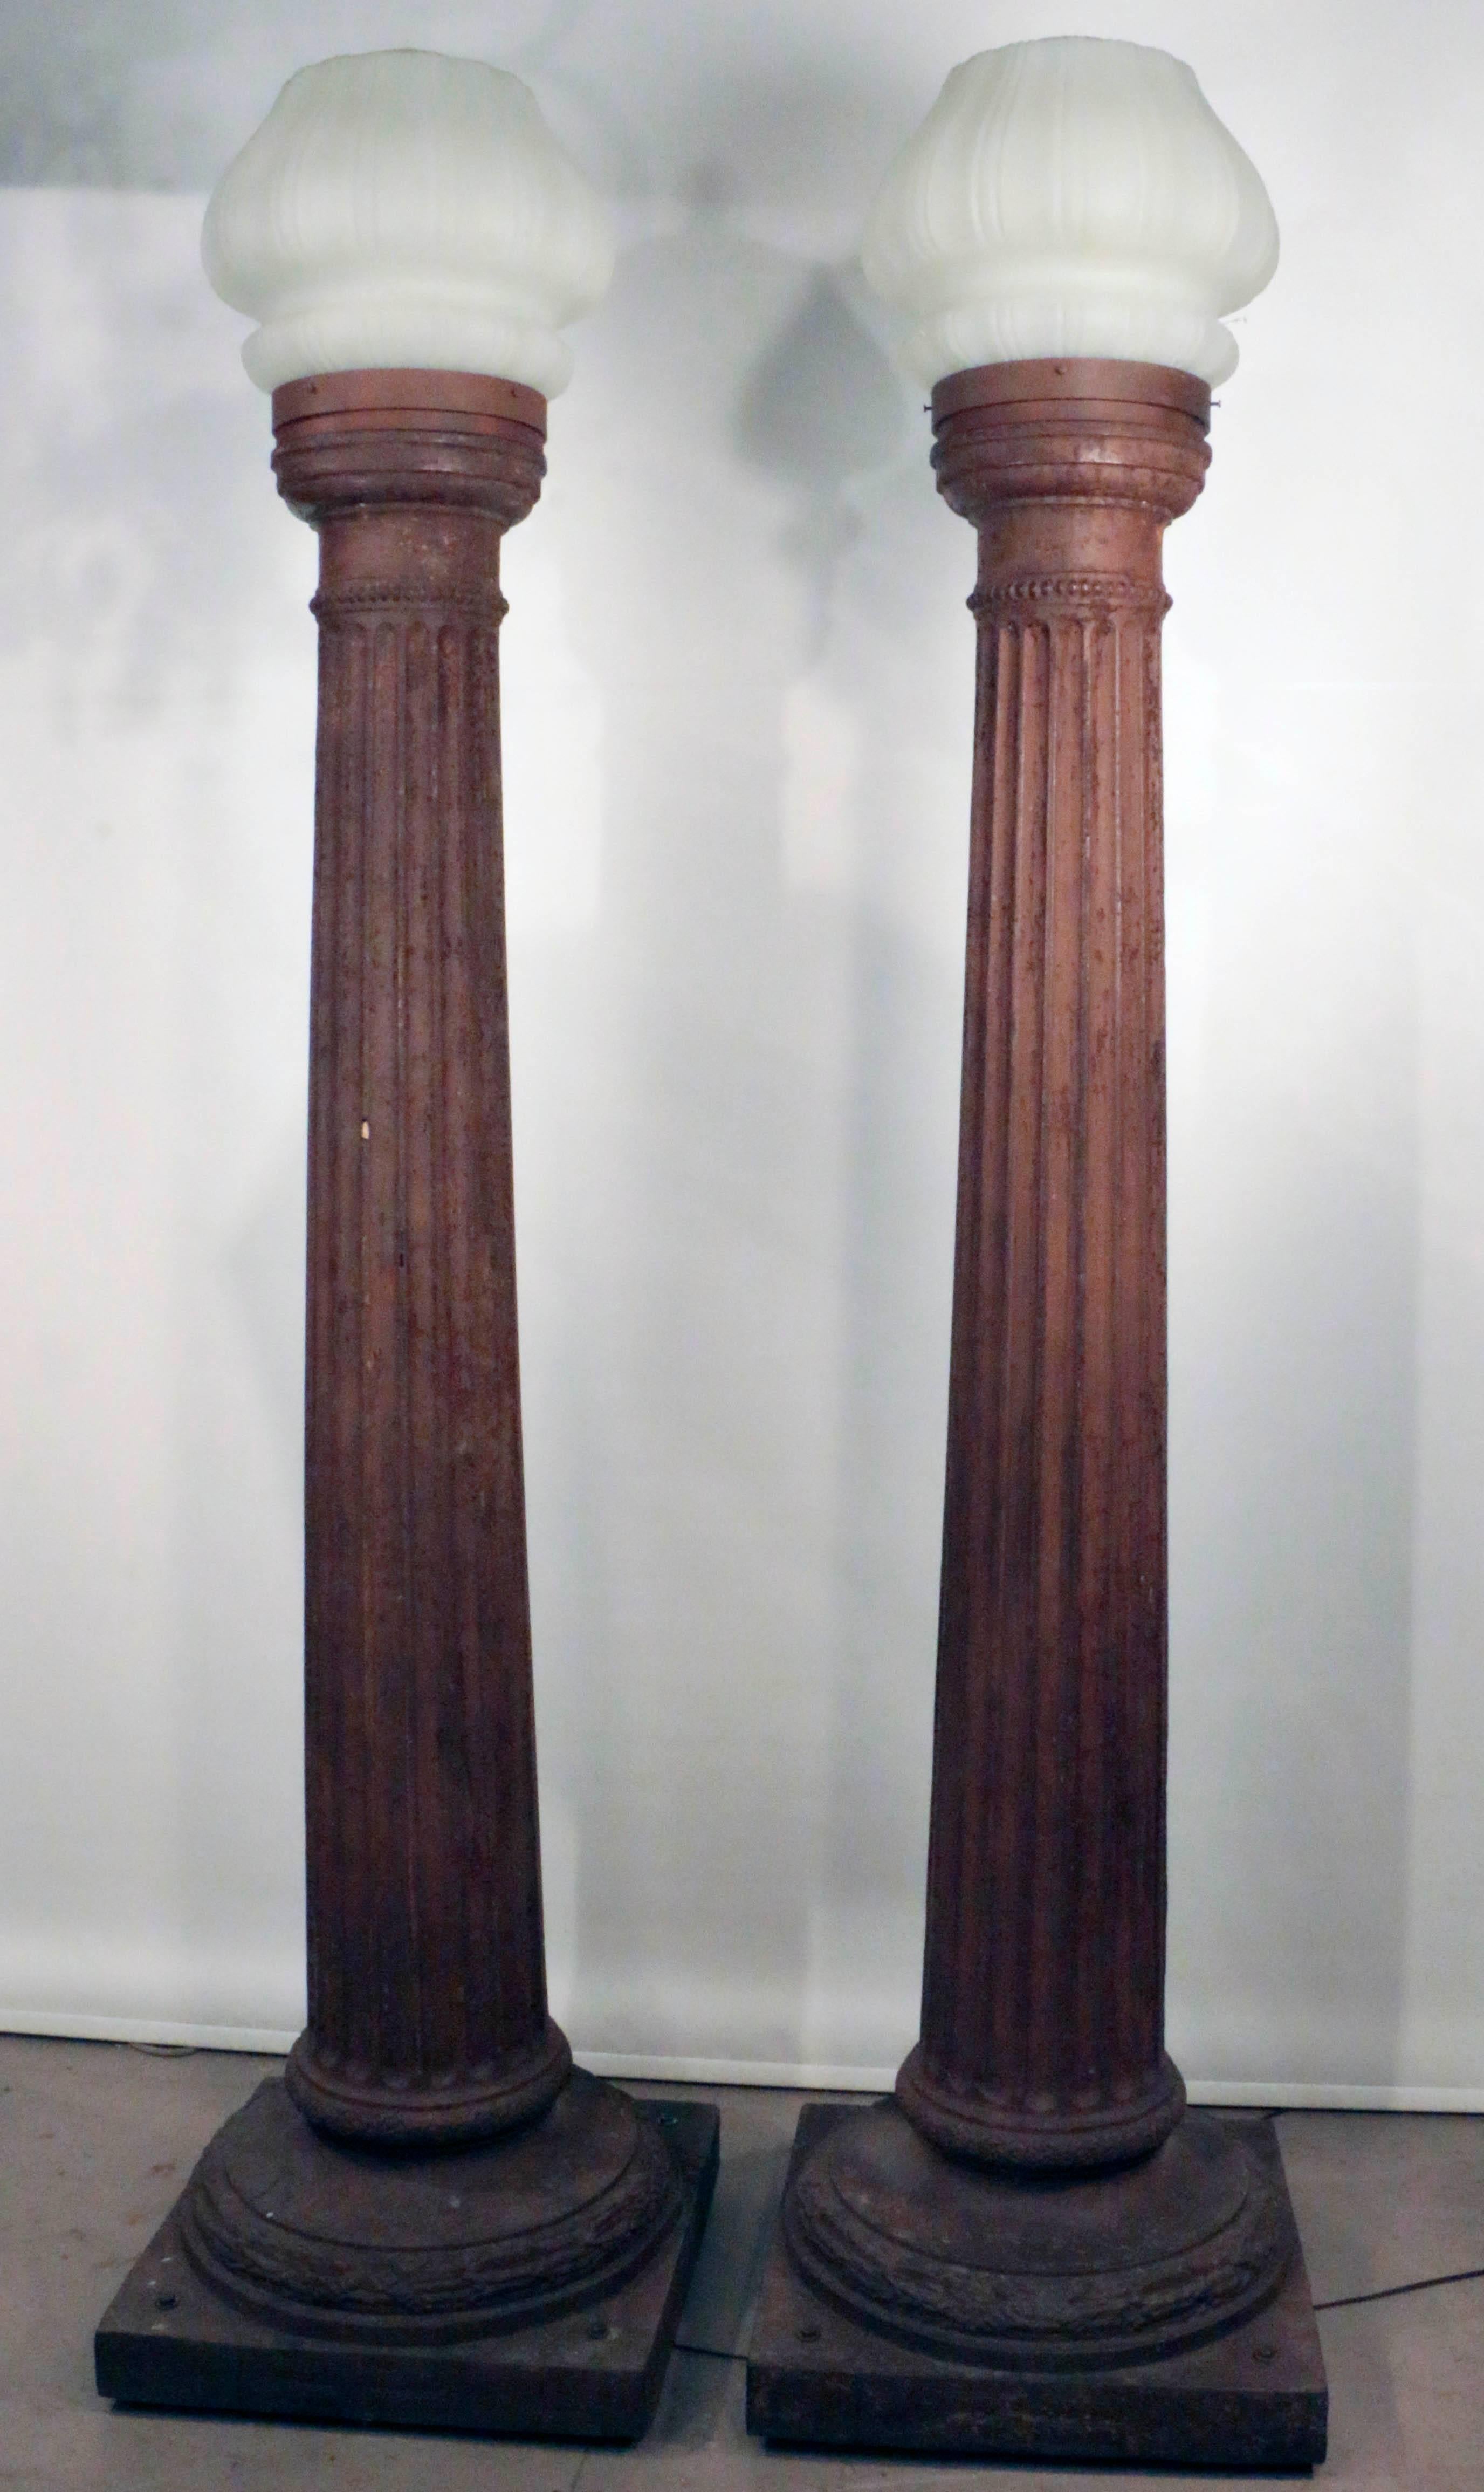 Ein Paar imposanter antiker Gusseisensäulen, die als Straßenlampen montiert sind. Jede dorische Säule ist kanneliert und verjüngt sich von der quadratischen Basis zu einer schlanken Spitze. Jede Säule ist mit einem antiken Milchglasschirm in Form